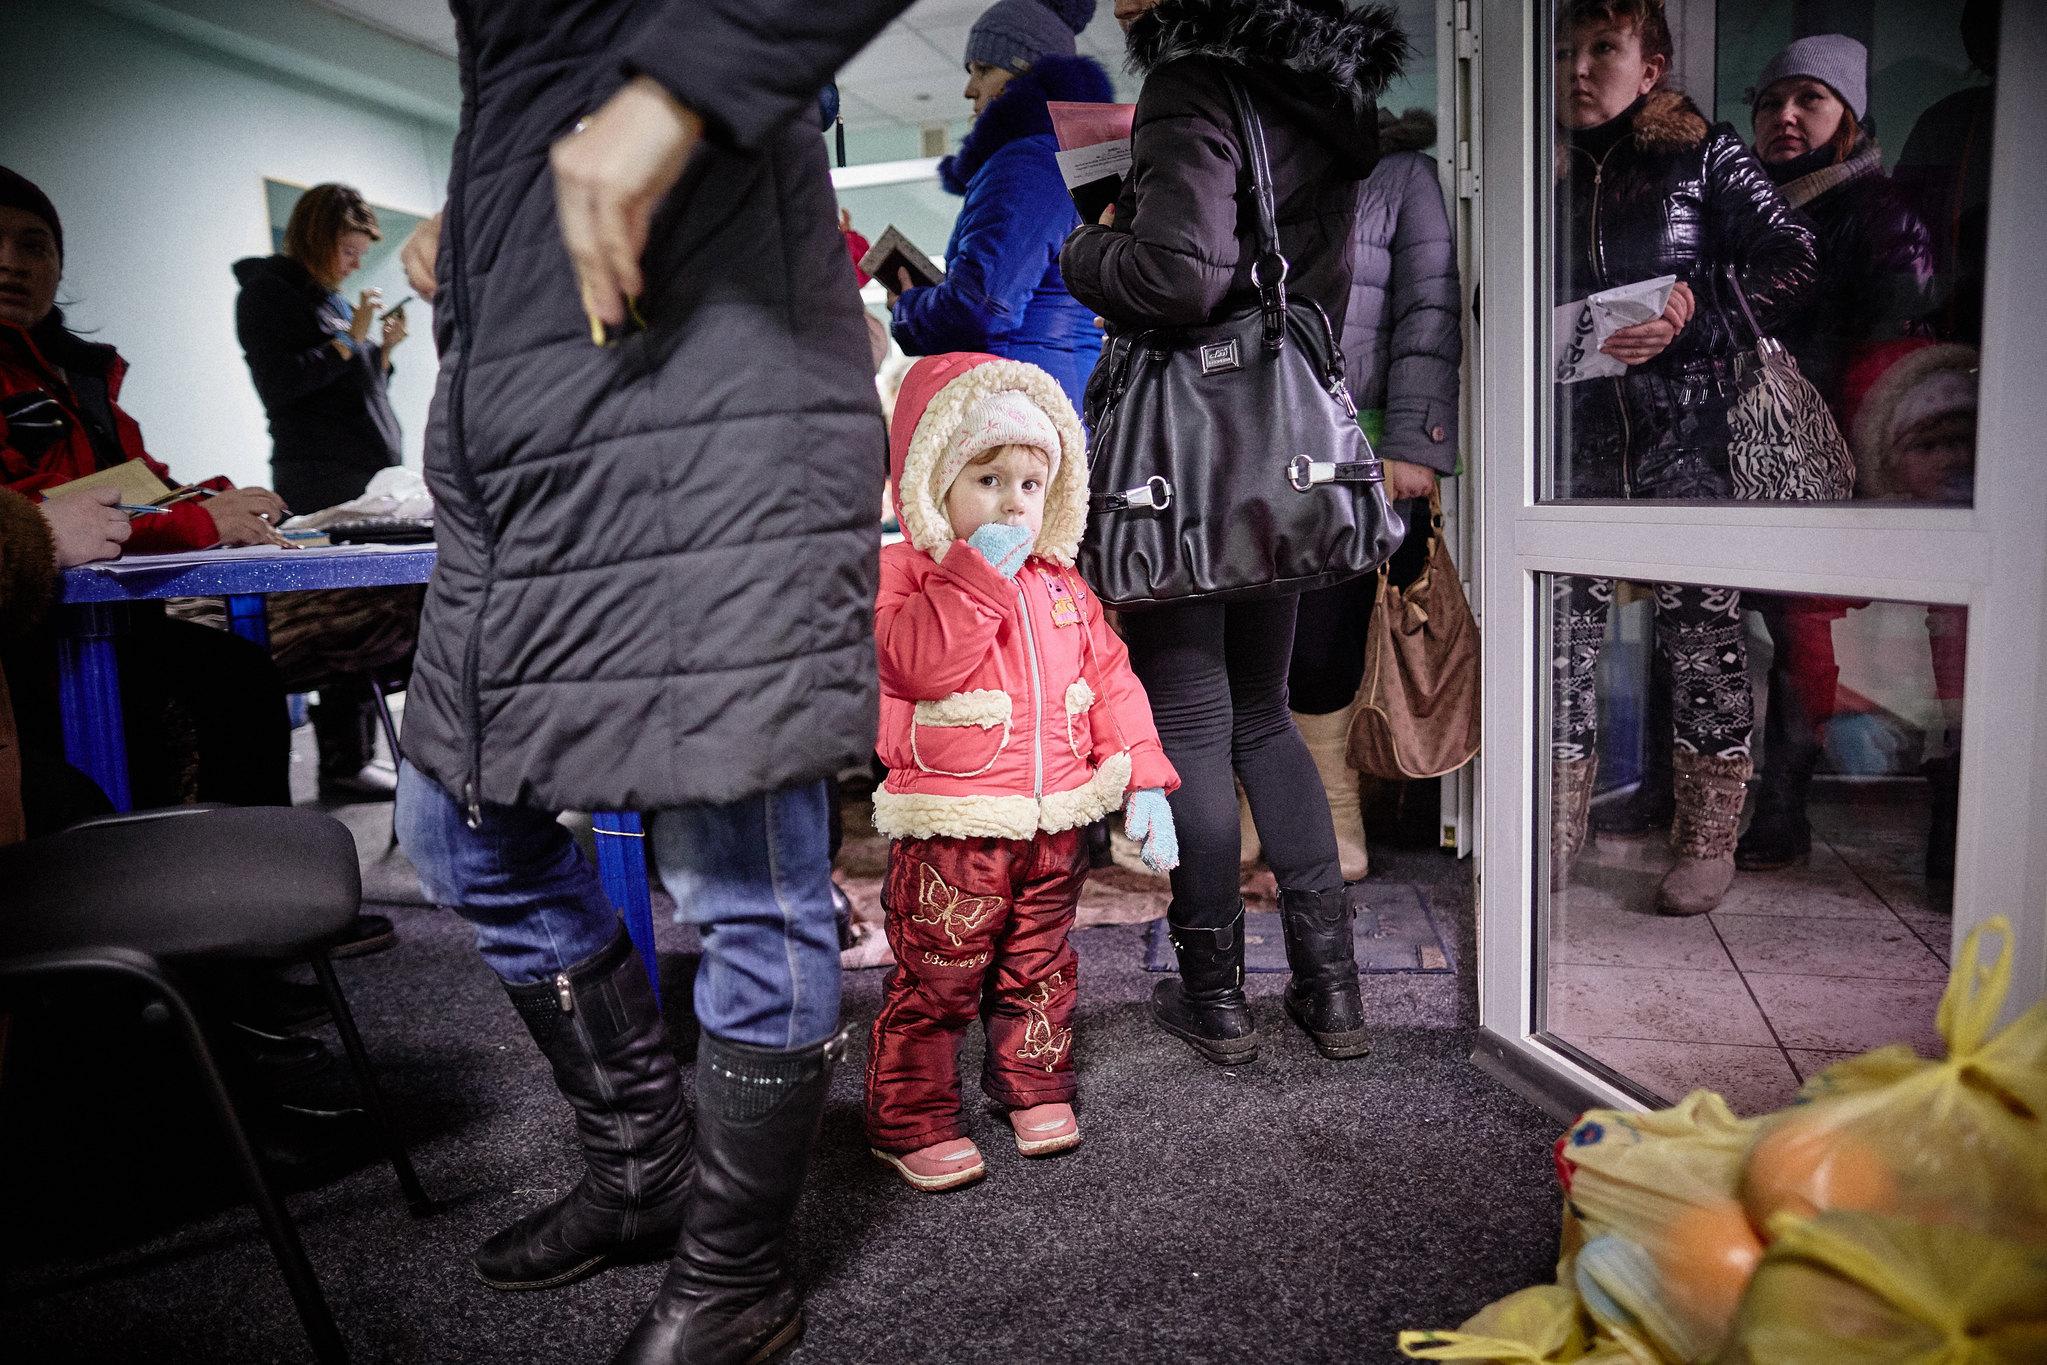 Accueil des réfugiés ukrainiens : où trouver de l'aide?